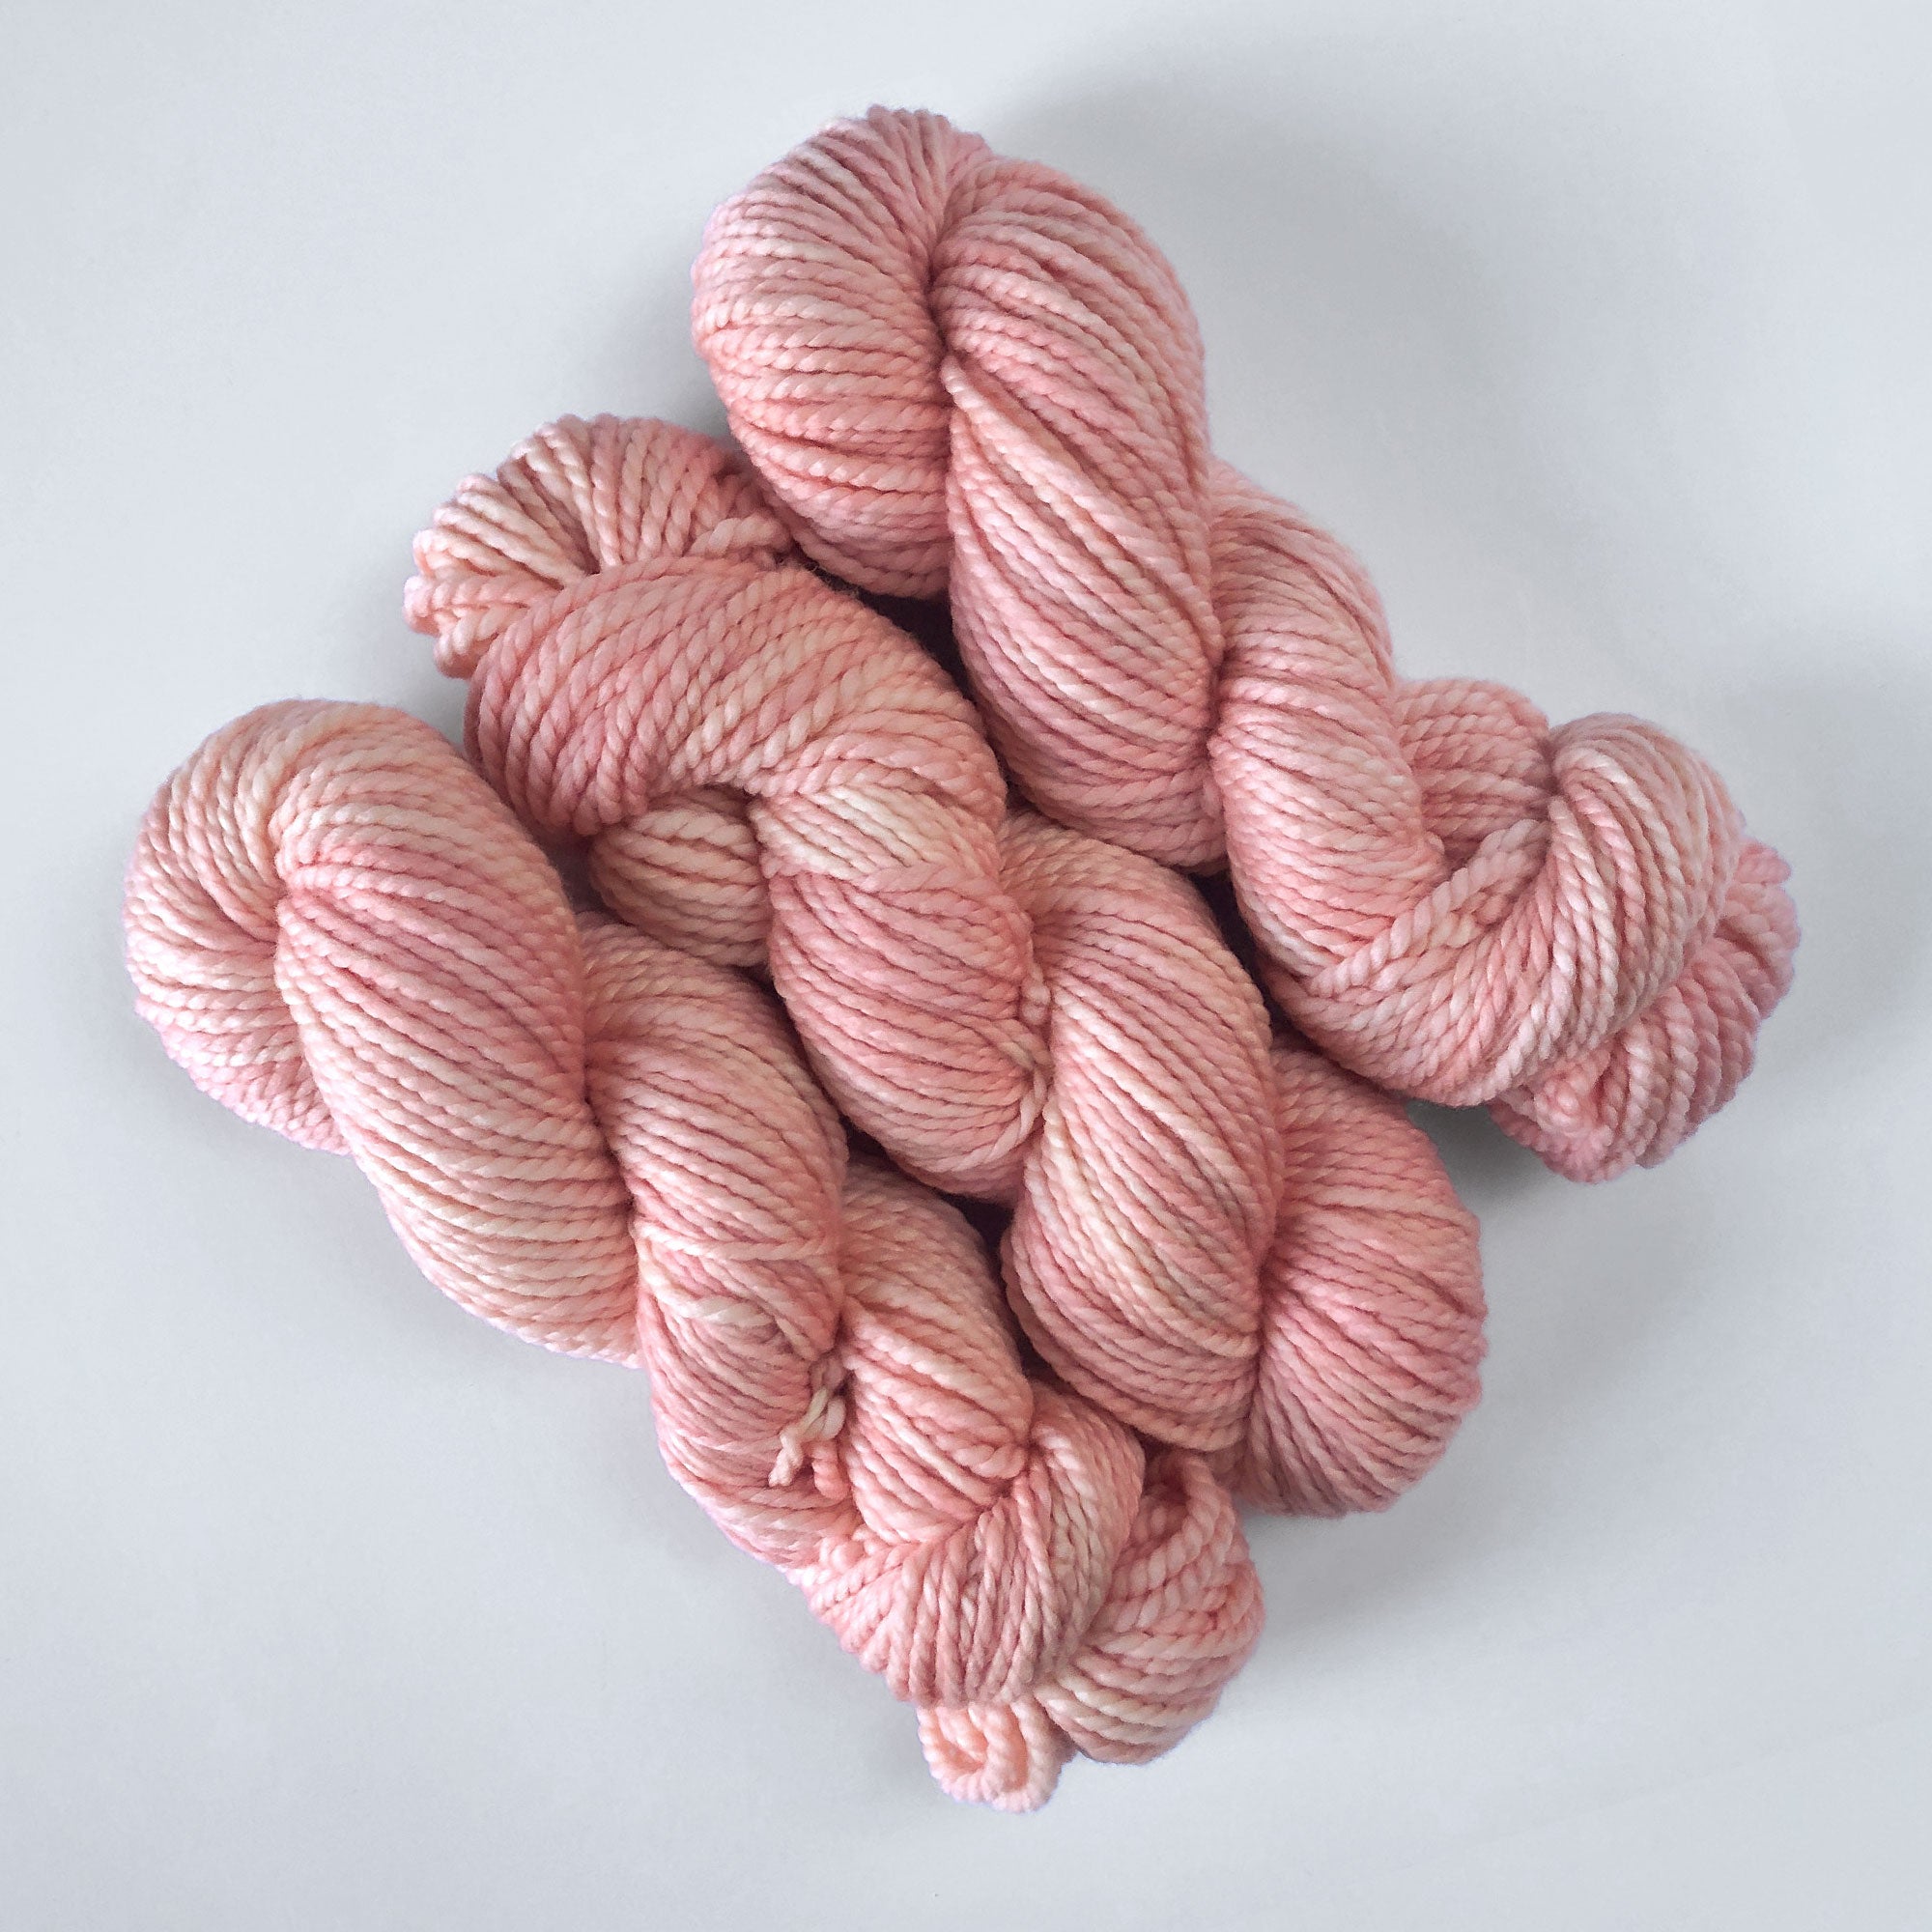 Hand dyed tonal pink yarn - 100%  extrafine superwash merino wool